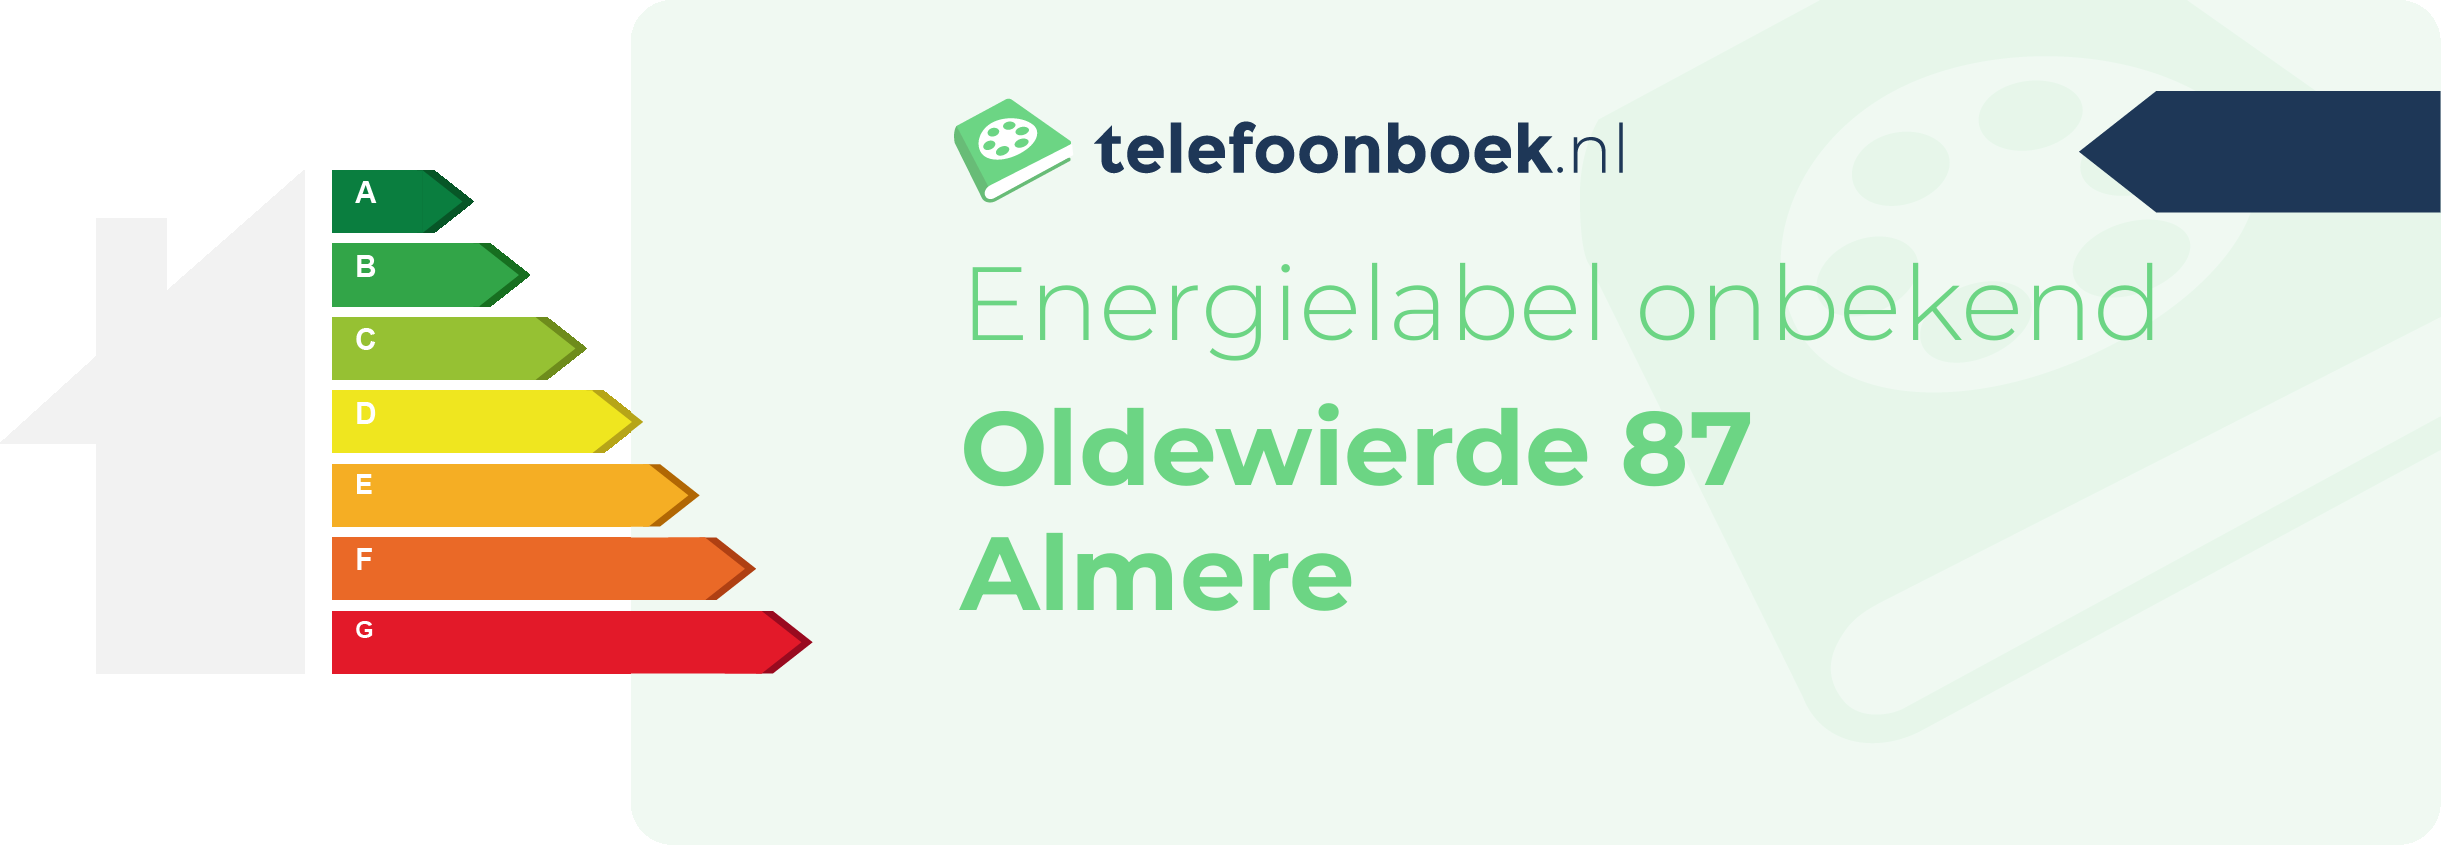 Energielabel Oldewierde 87 Almere